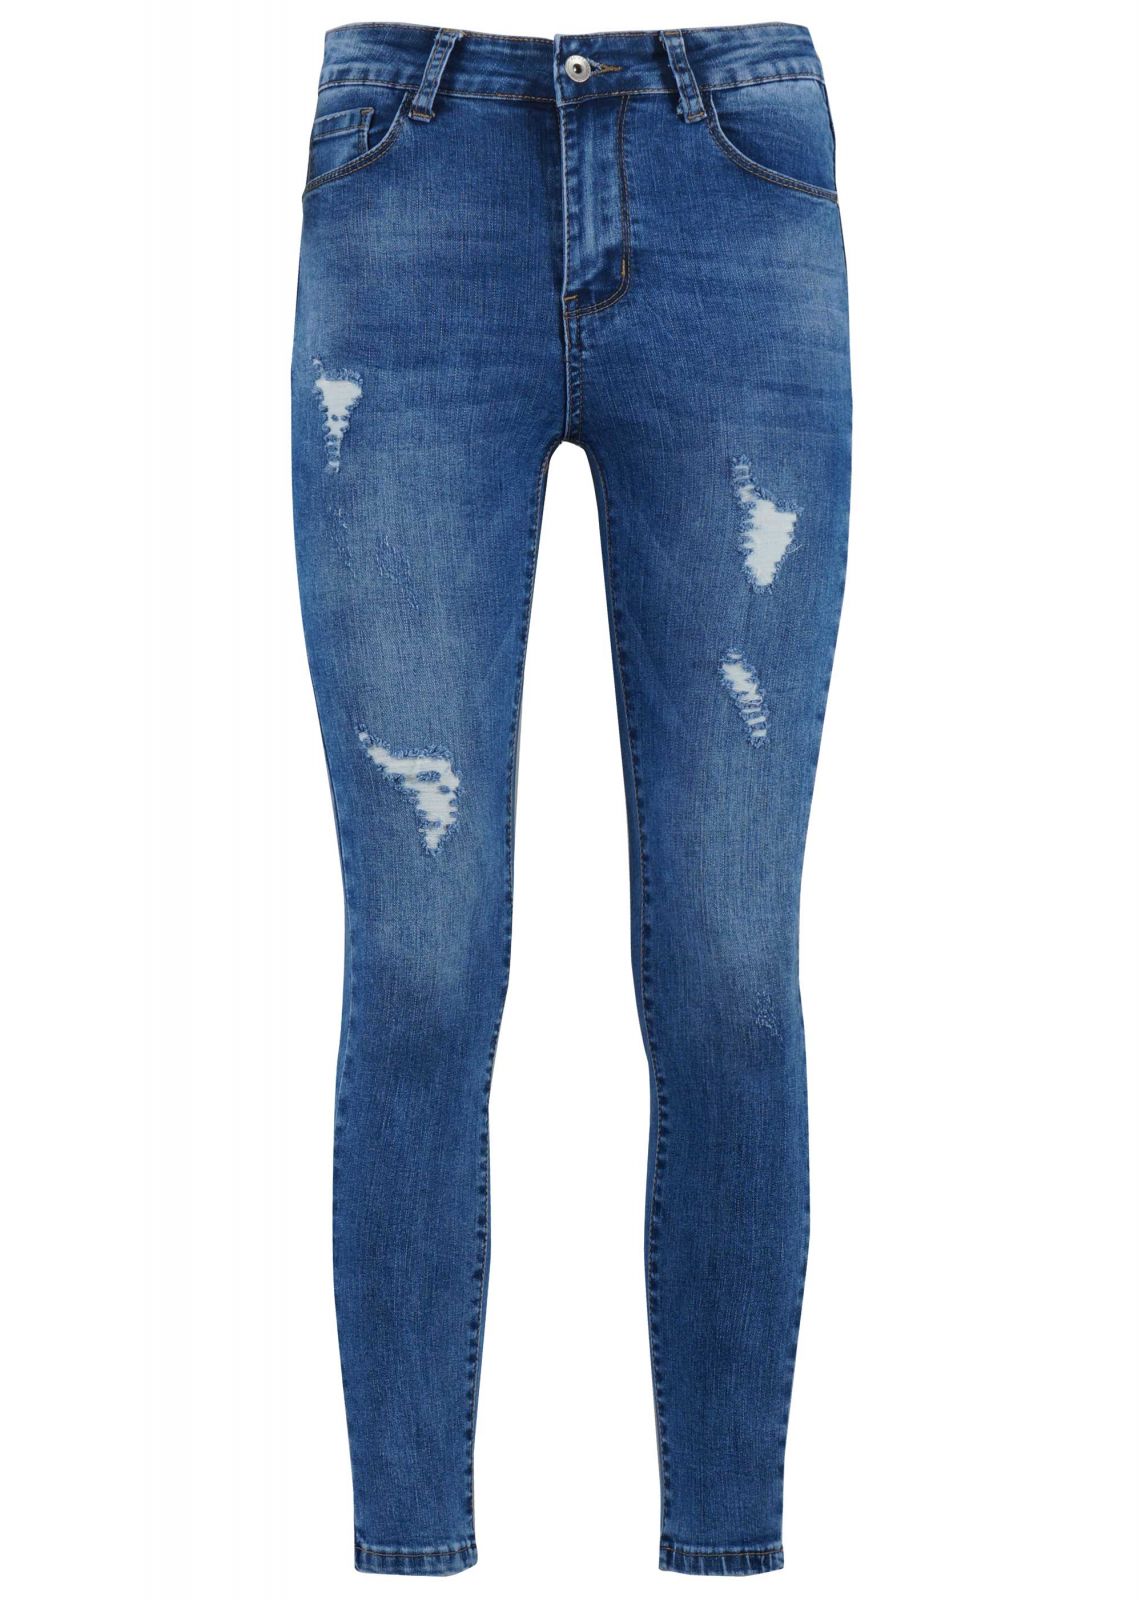 Γυναικείο παντελόνι jean skinny ελαστικό ψηλόμεσο. Denim Collection